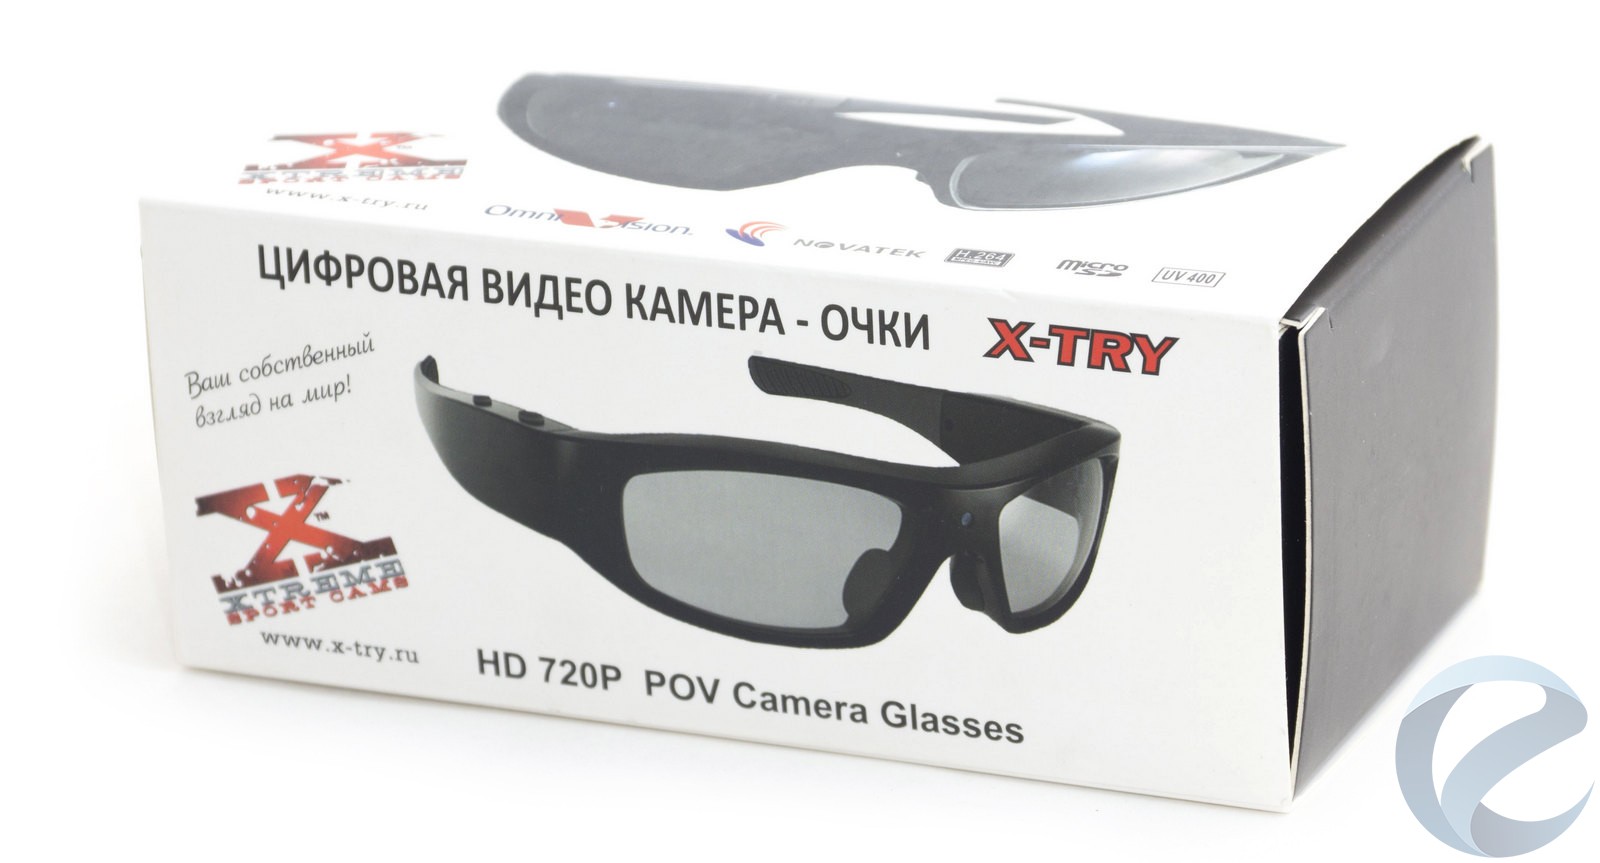 Очки с видеорегистратором представляют собой устройство, которое завоевало признание пользователей благодаря интересному и полезному функционалу